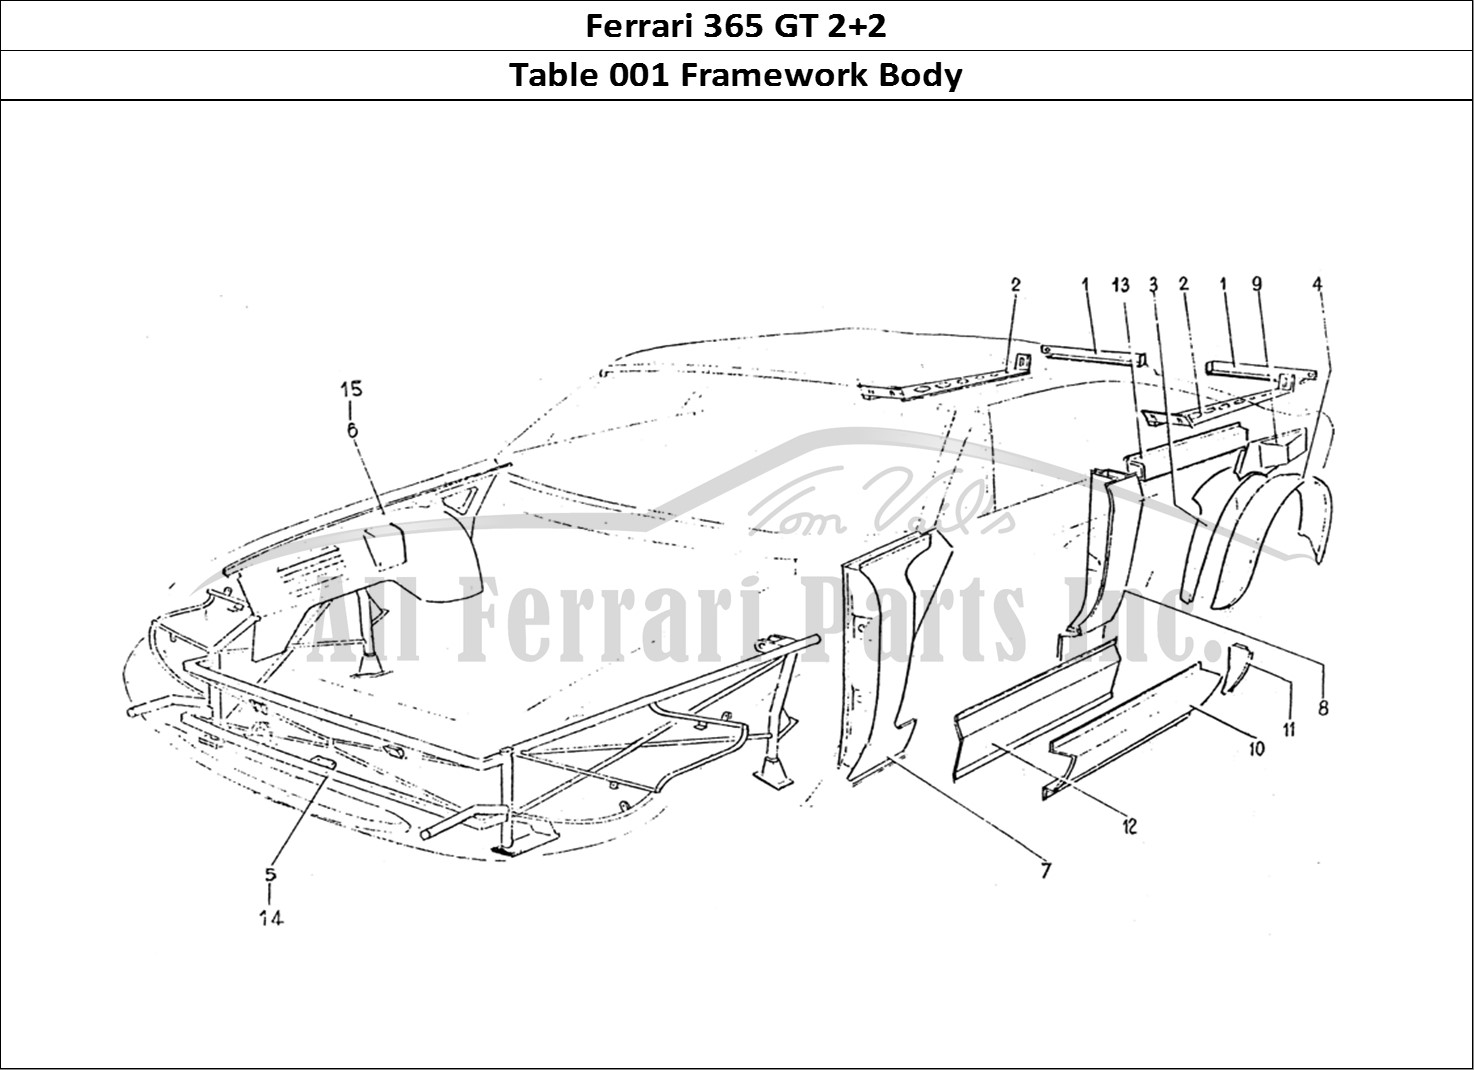 Ferrari Parts Ferrari 365 GT 2+2 (Coachwork) Page 001 Frame work body